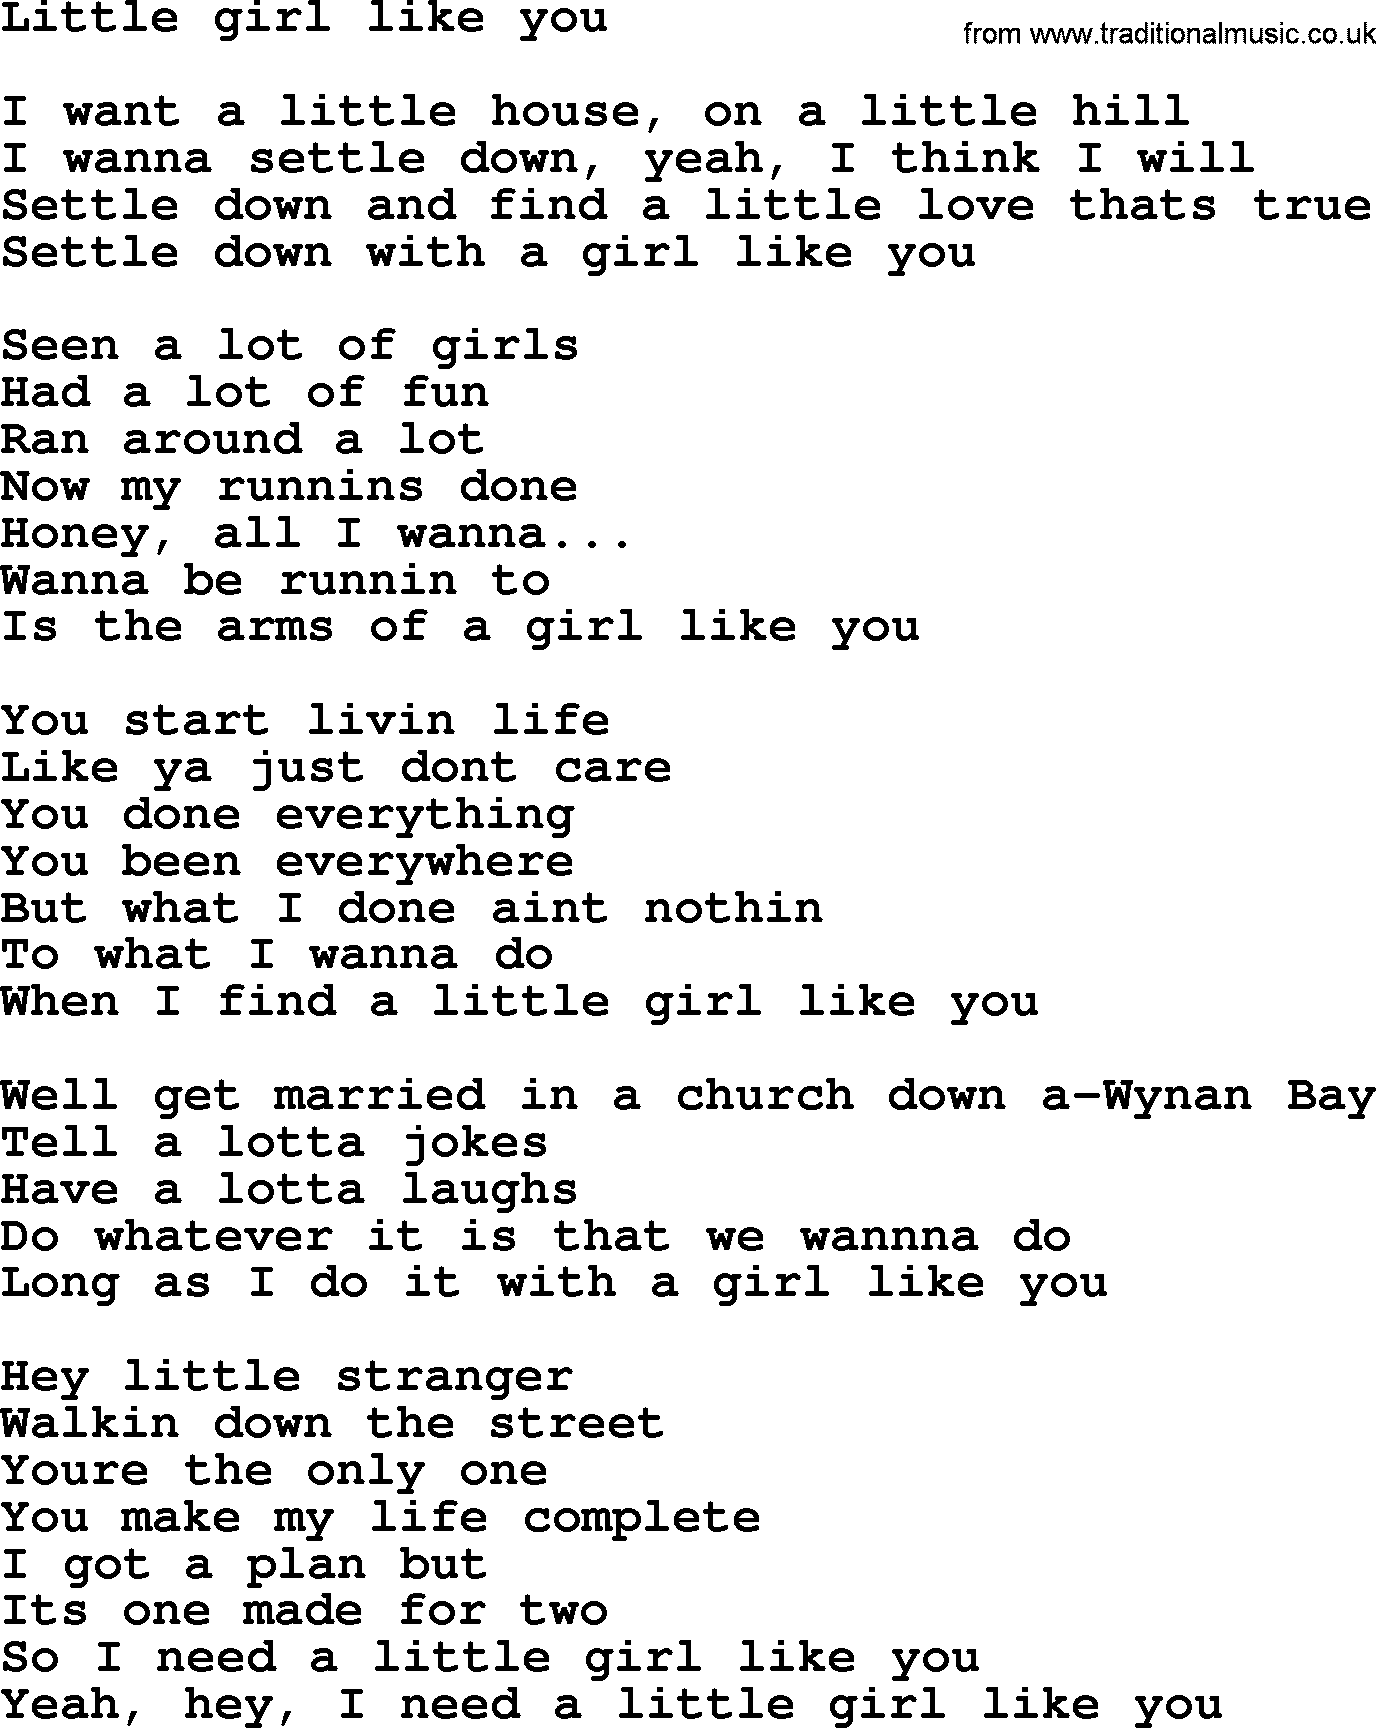 Bruce Springsteen song: Little Girl Like You lyrics